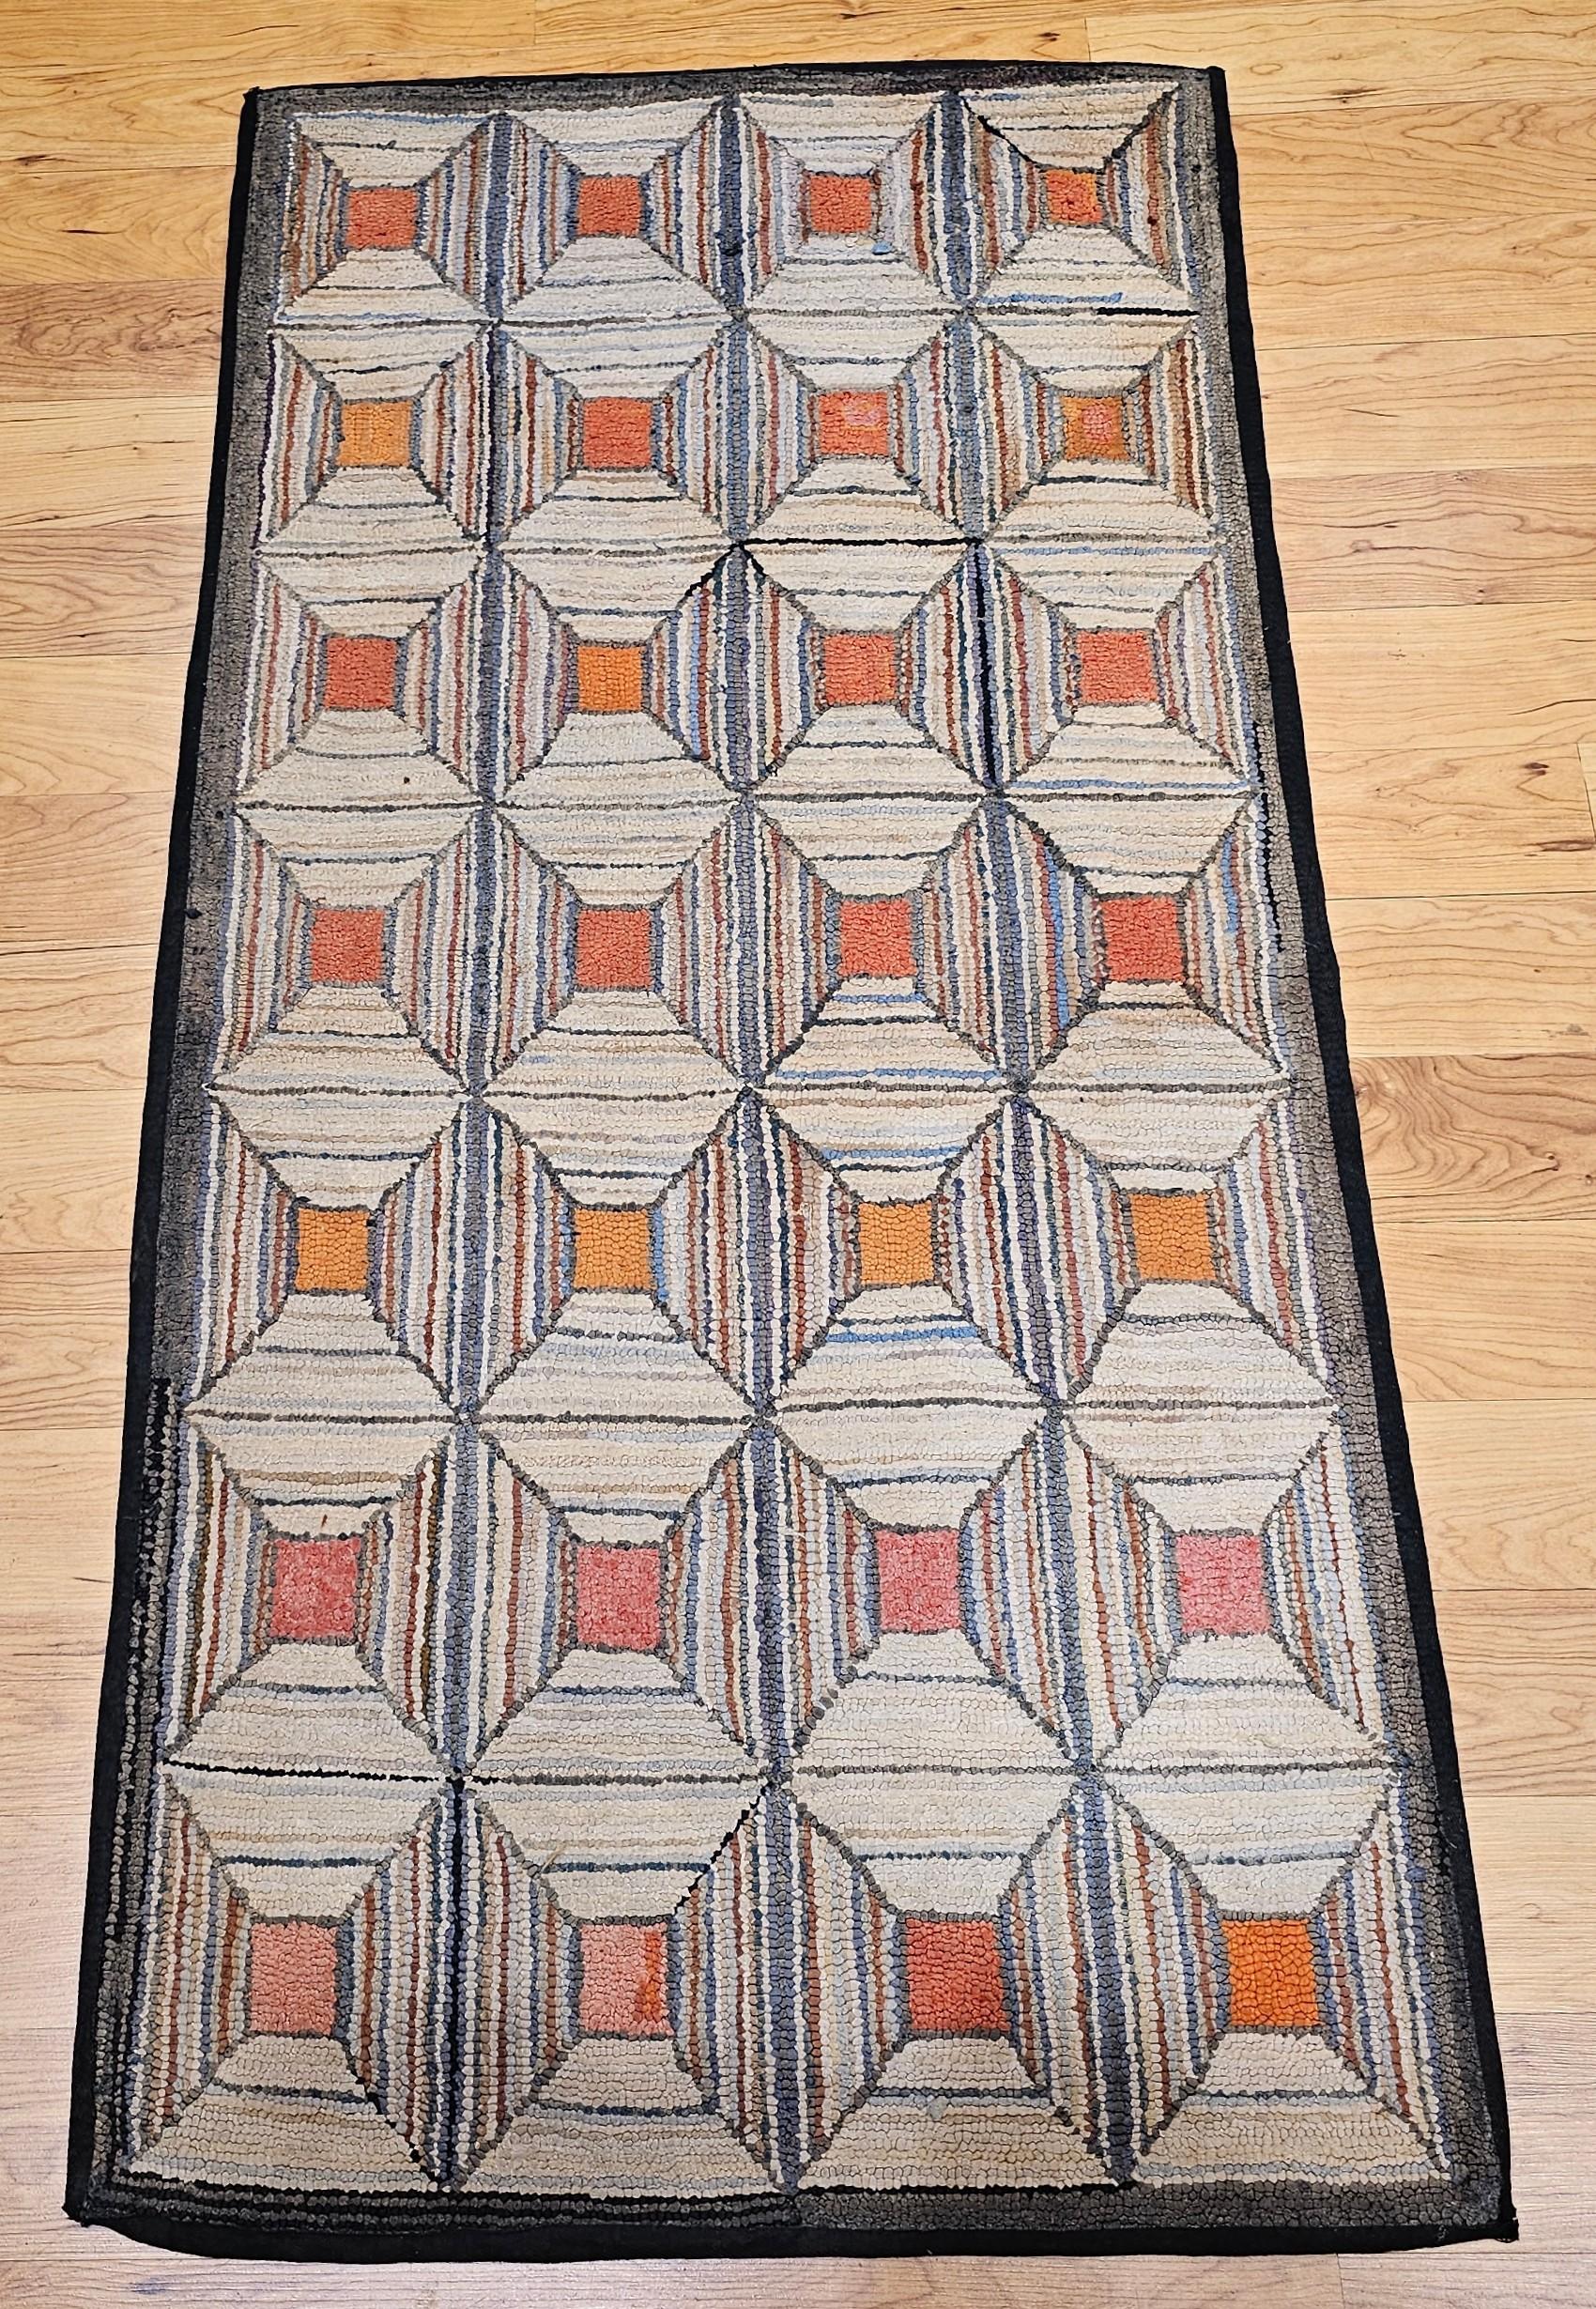  Amerikanischer handgeknüpfter Teppich mit geometrischem Muster, handgefertigt im 4. Quartal des 19. Jahrhunderts in Neuengland in den Vereinigten Staaten.  Das Design der einzelnen Blöcke erweckt den Eindruck, als würde man in einen Trichter